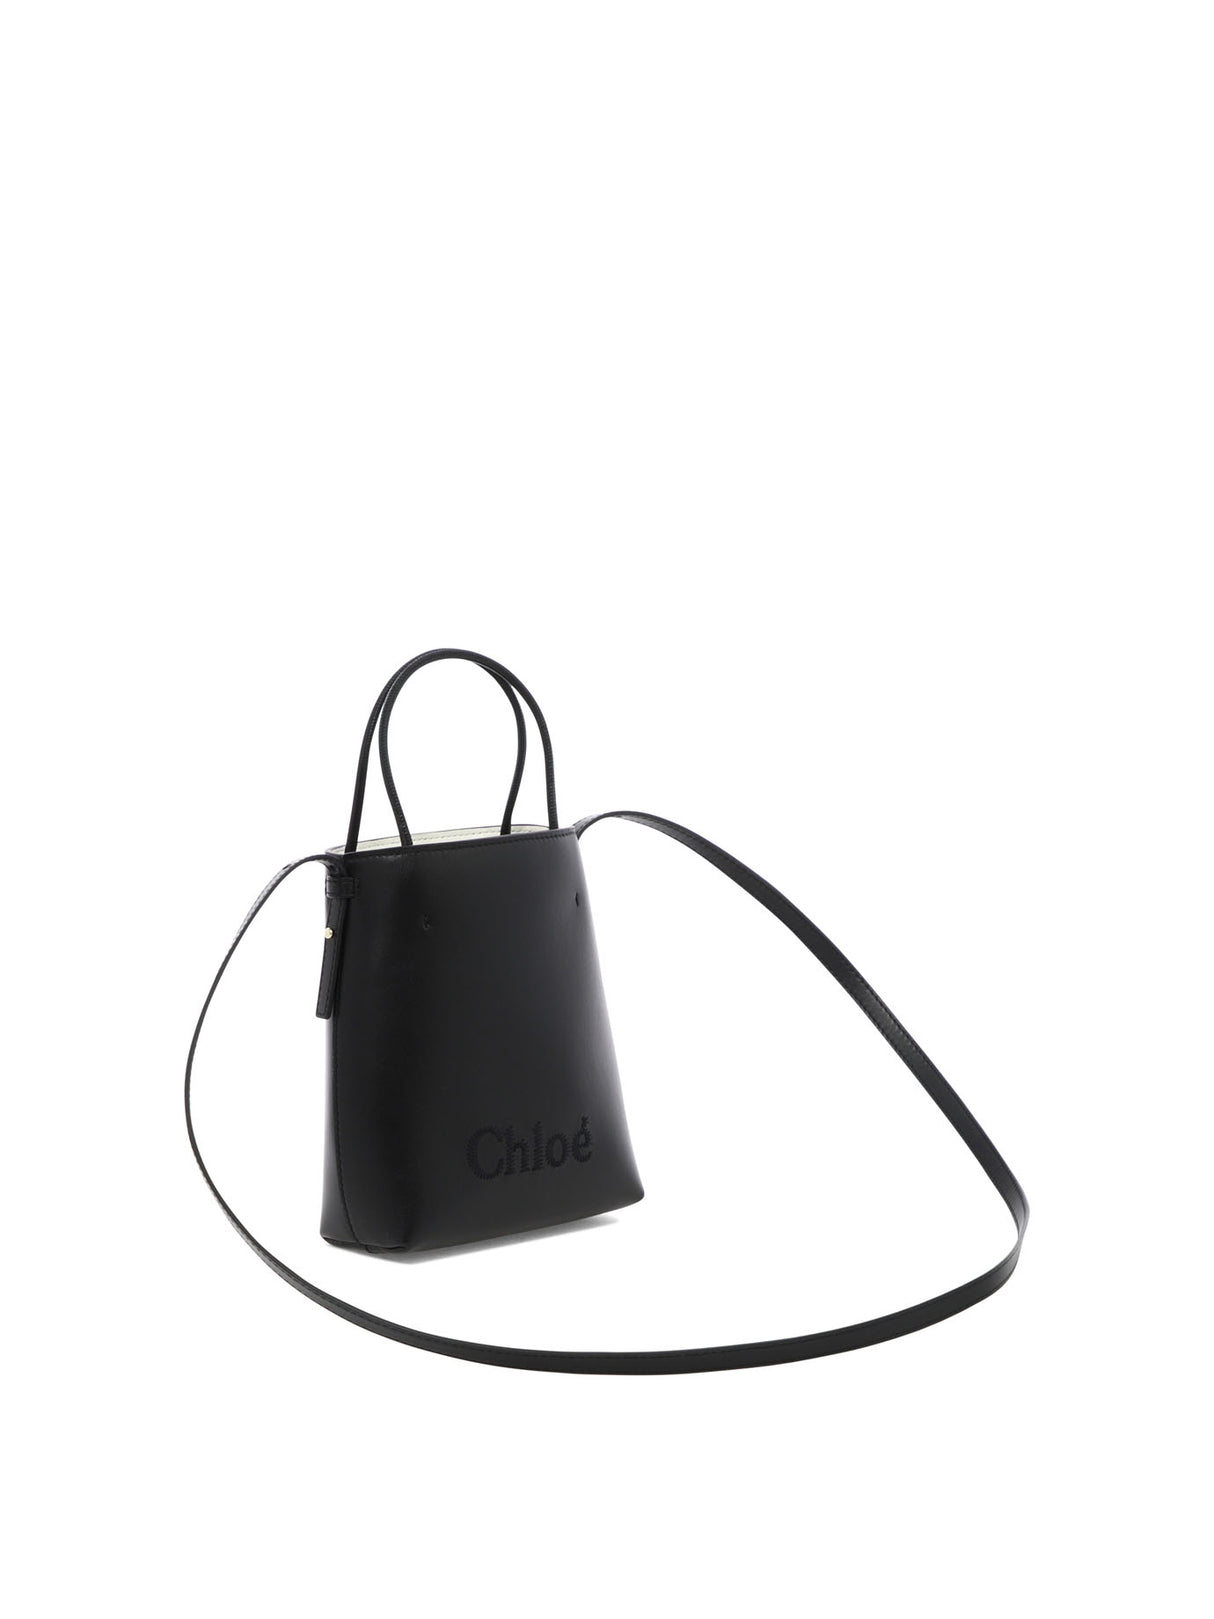 時尚女士黑色皮筒桶包 (Stylish SS24 Women's Black Leather Bucket Bag)